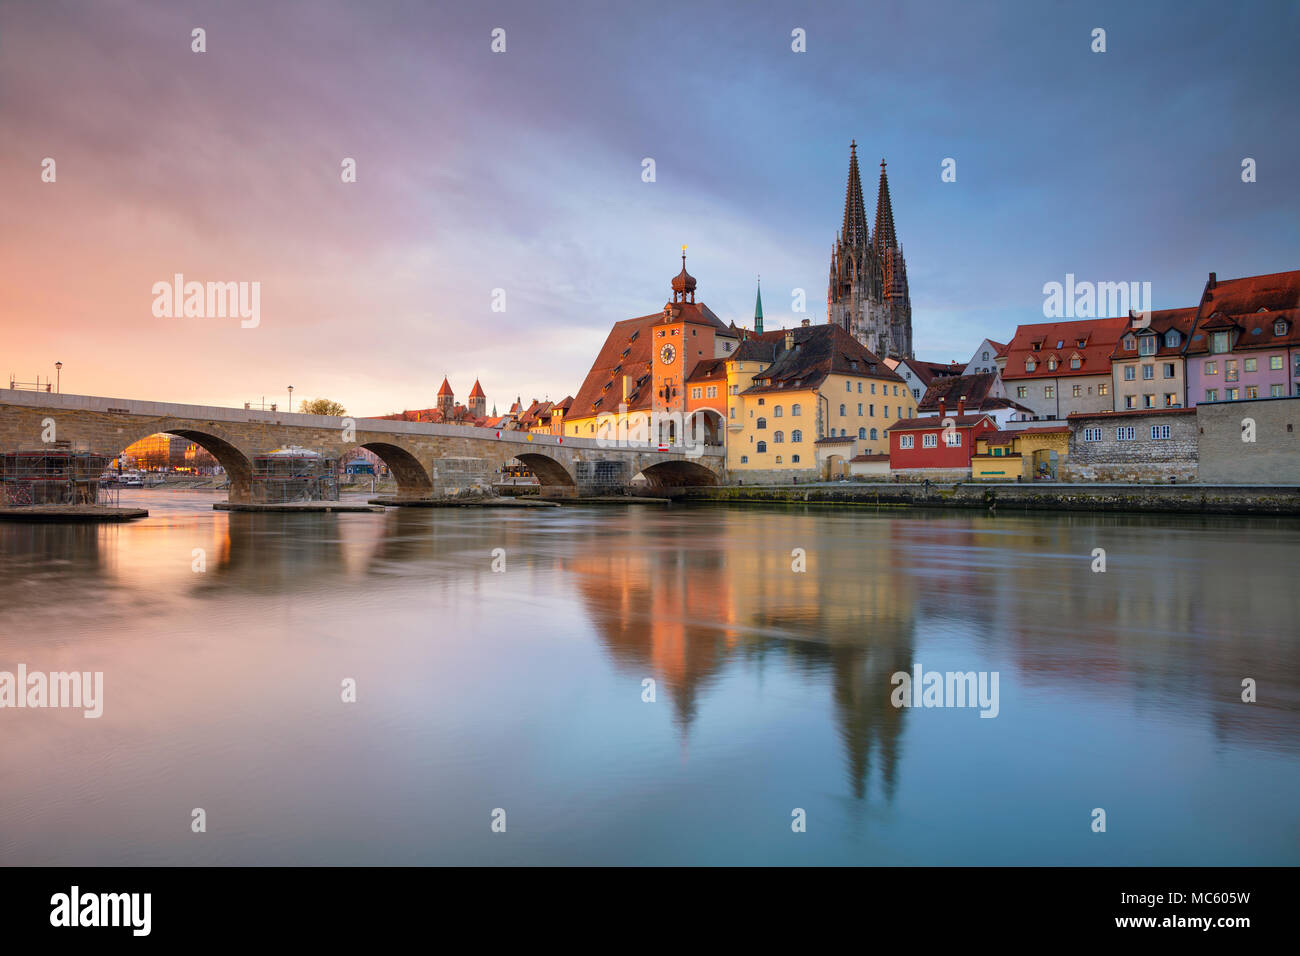 Regensburg. Imagen del paisaje urbano de Regensburg, Alemania durante la primavera del amanecer. Foto de stock